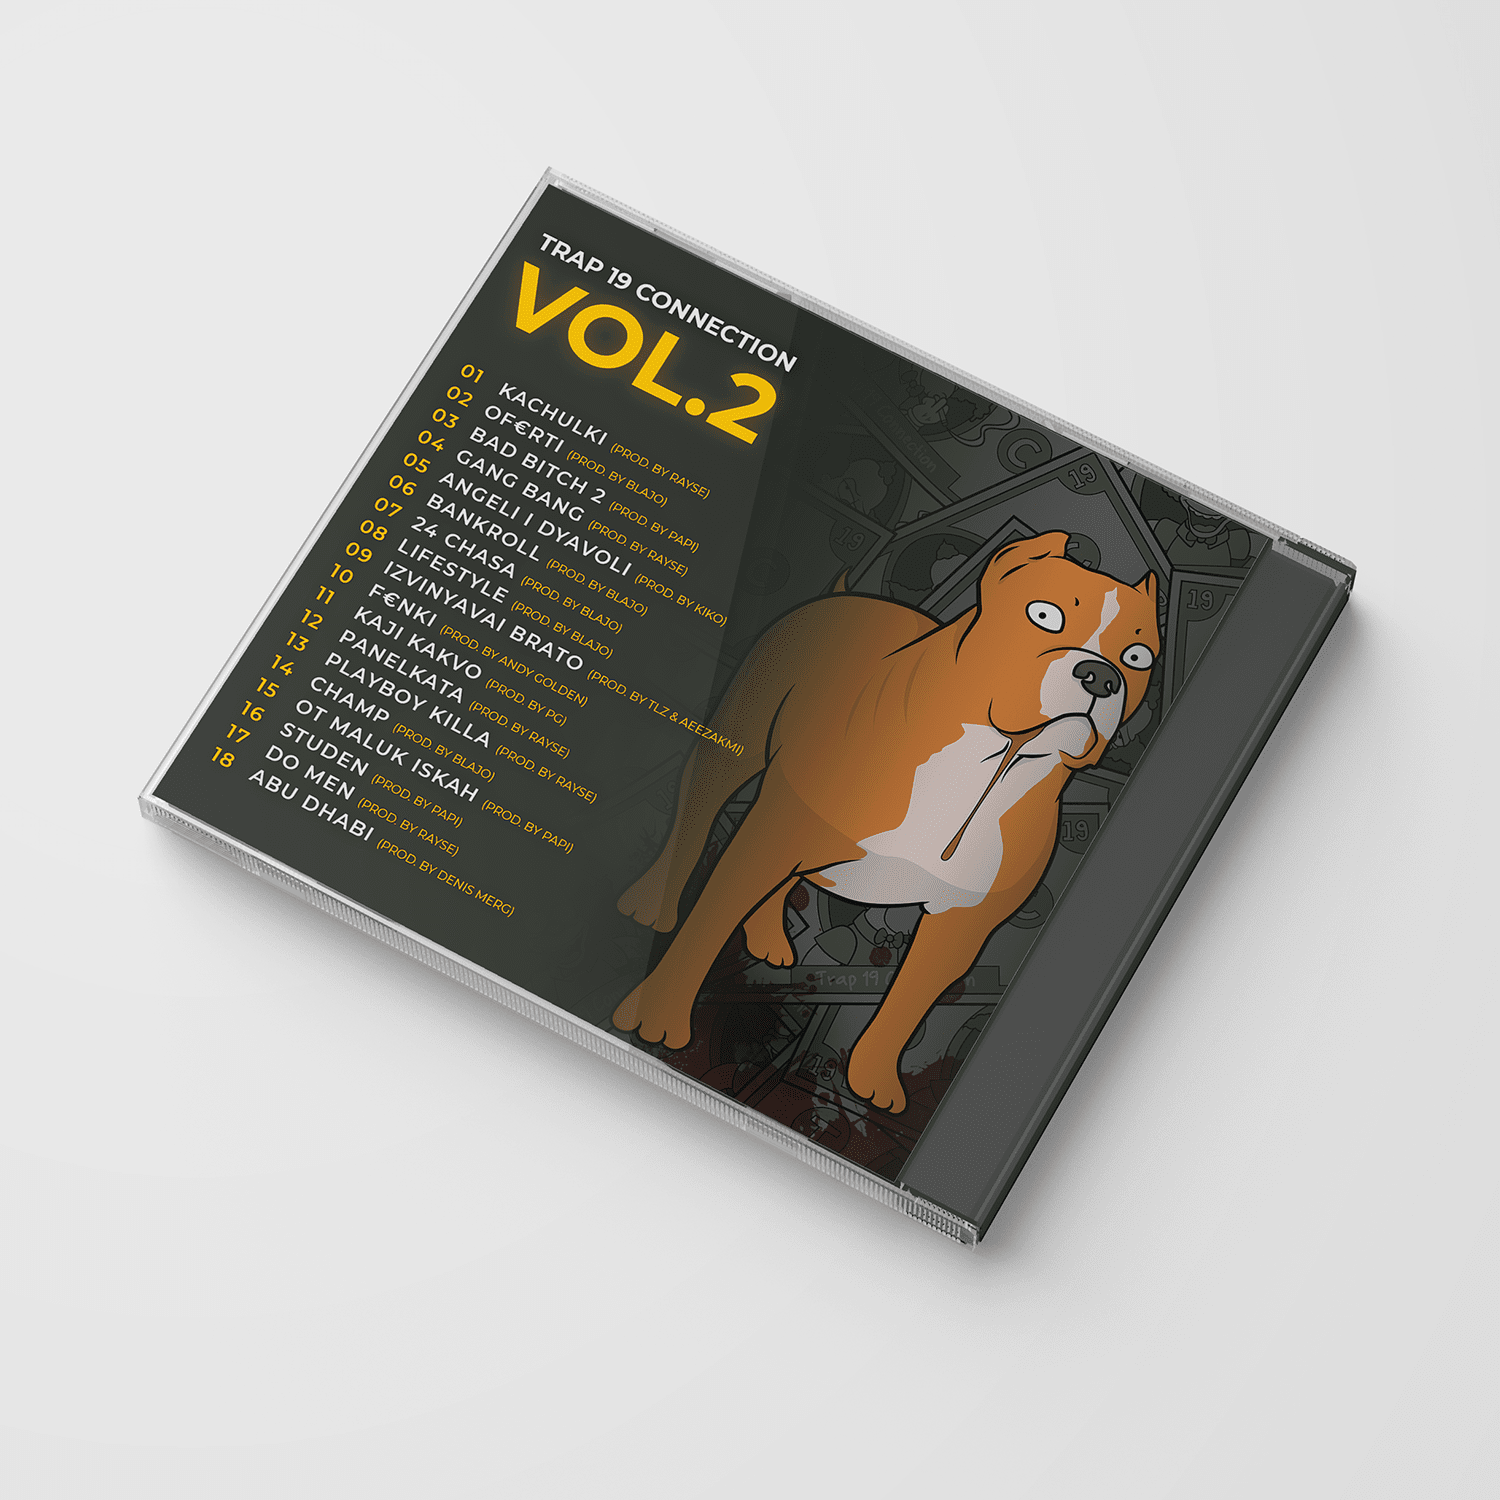 Албум - "VOL.2"